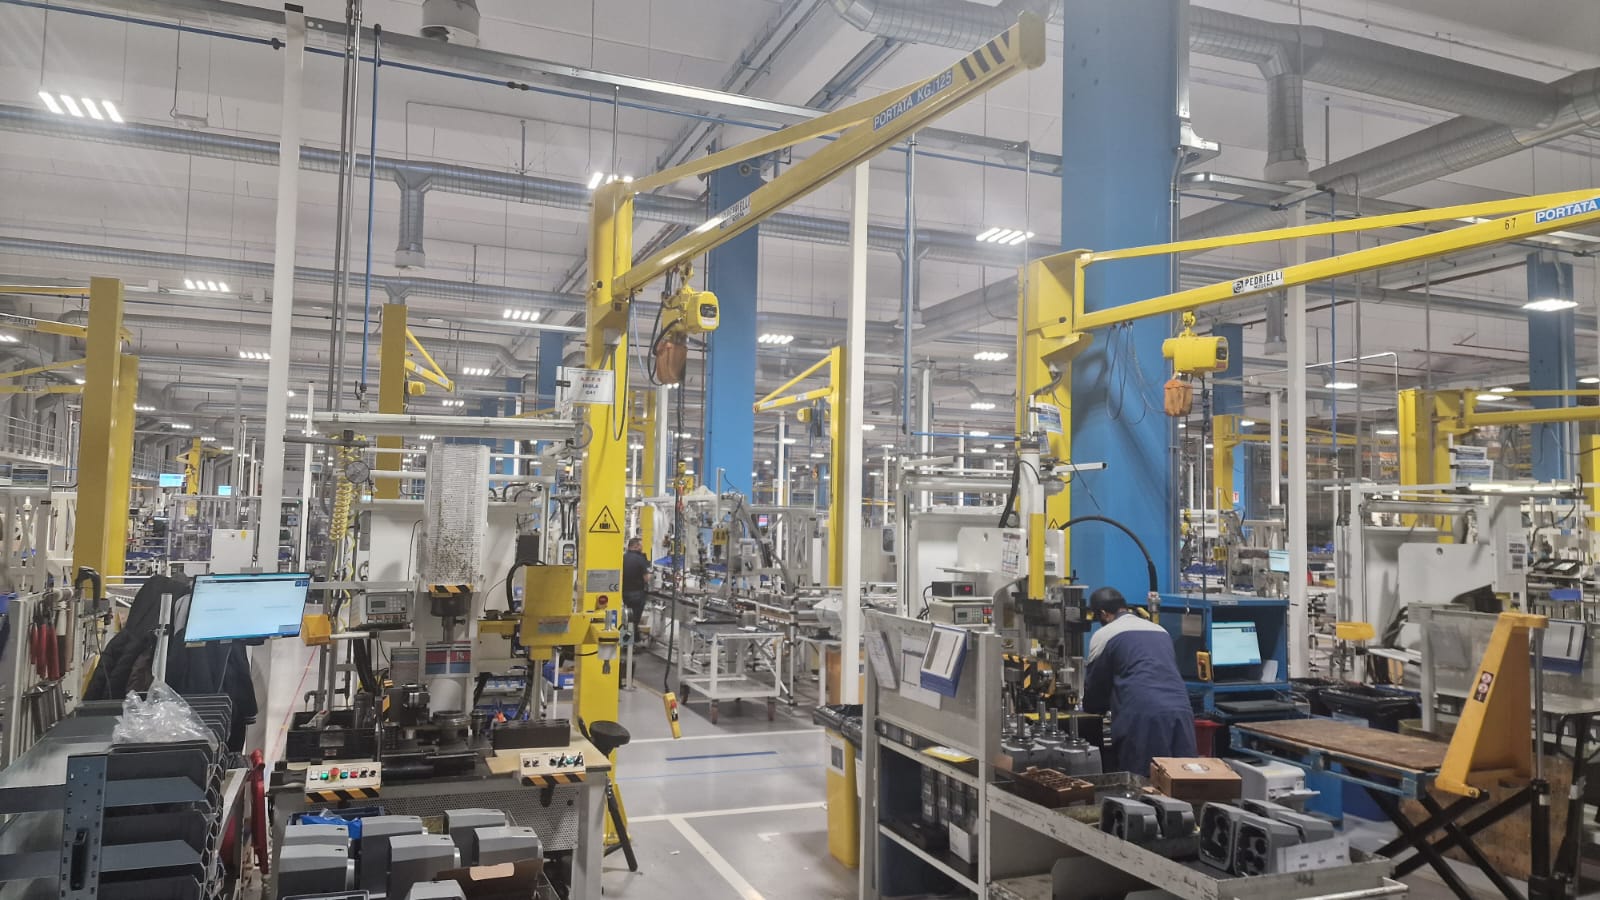 Nel cuore produttivo dell’Emilia Romagna sorge il nuovo stabilimento di Bonfiglioli Riduttori S.p.A., azienda leader mondiale nel mercato della produzione di riduttori meccanici e componenti.